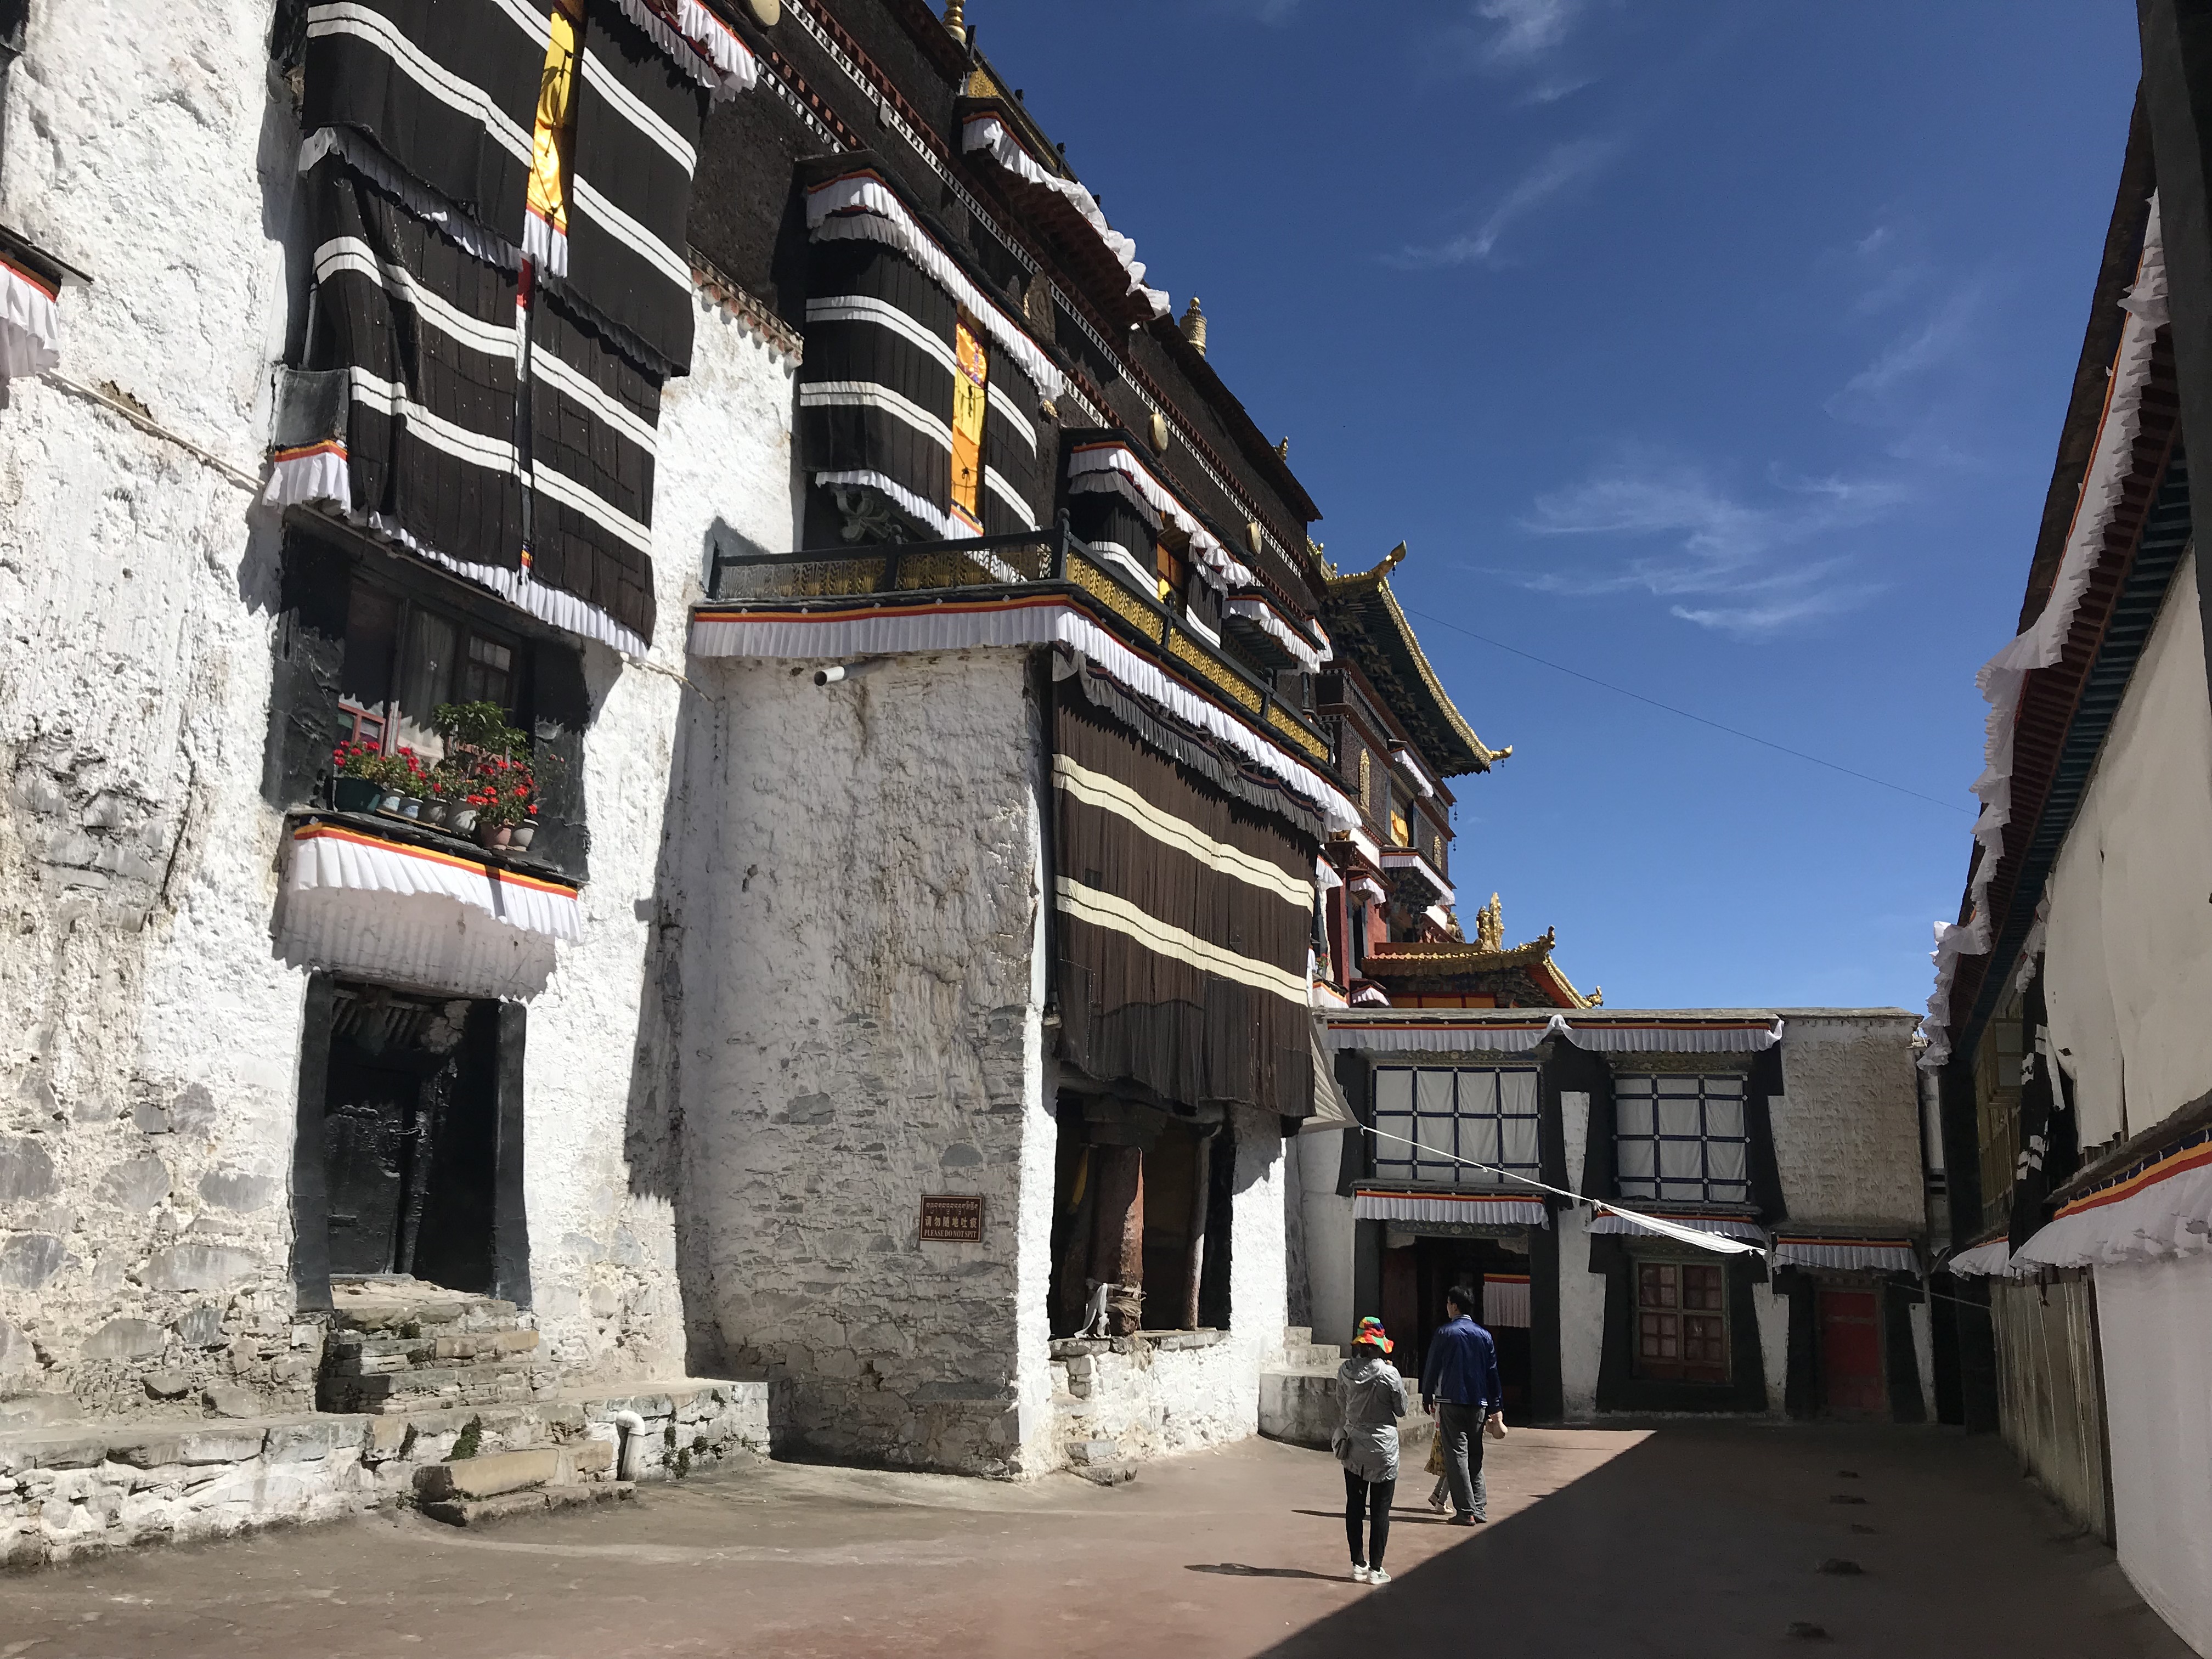 “日喀则全域旅游峰会” 绽放后藏圣地-景域新闻-景域国际旅游运营集团